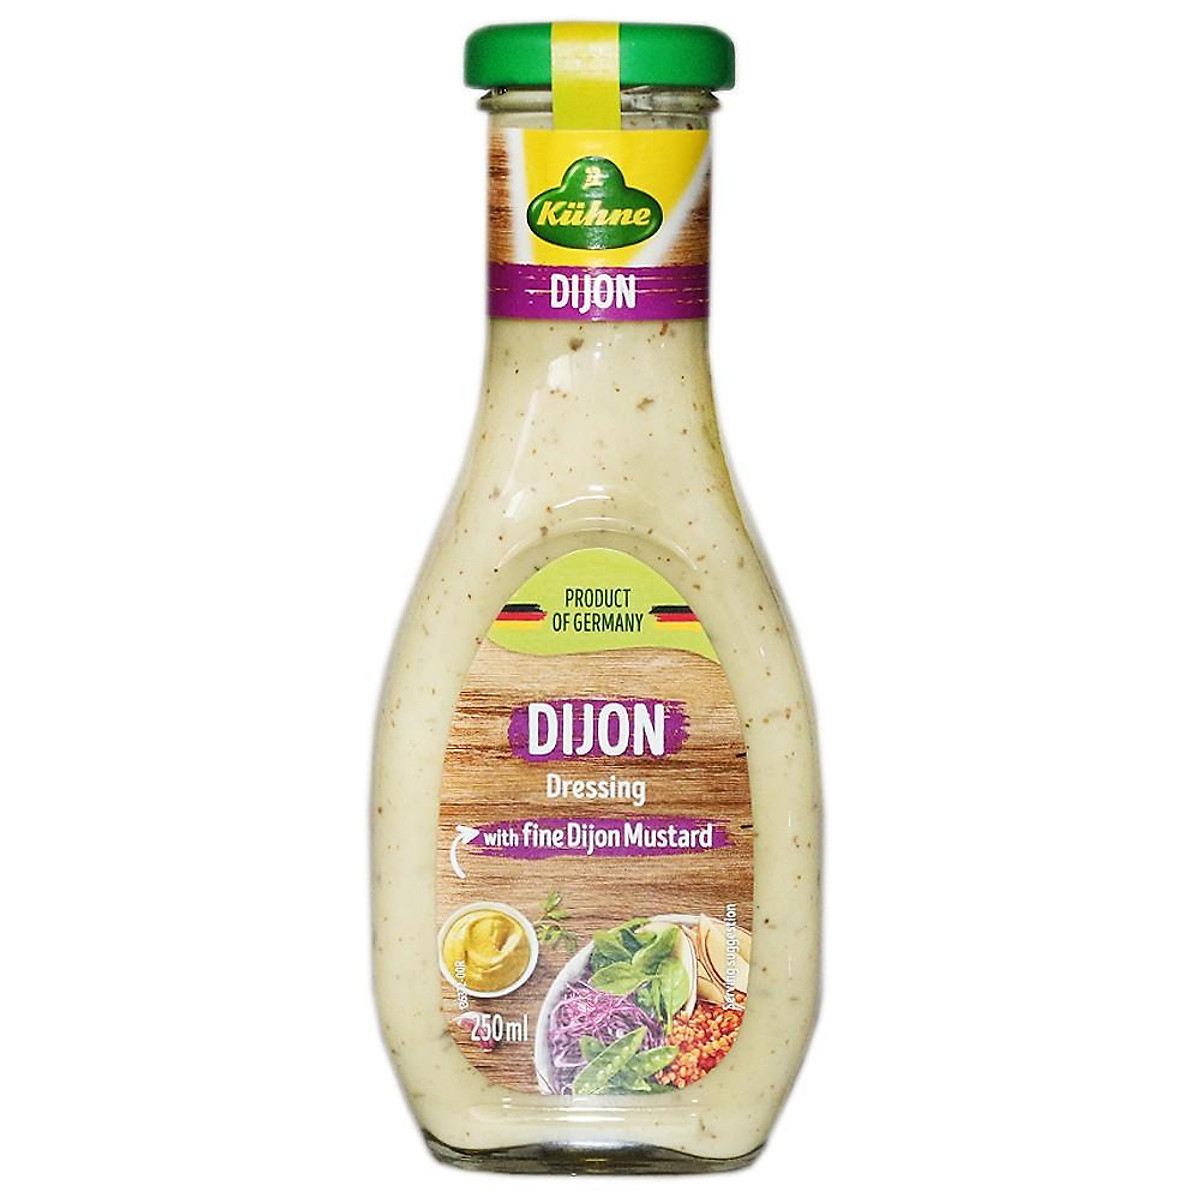 Sốt Trộn Salad Mù Tạt Dijon, Dijon Dressing, with Fine Dijon Mustard